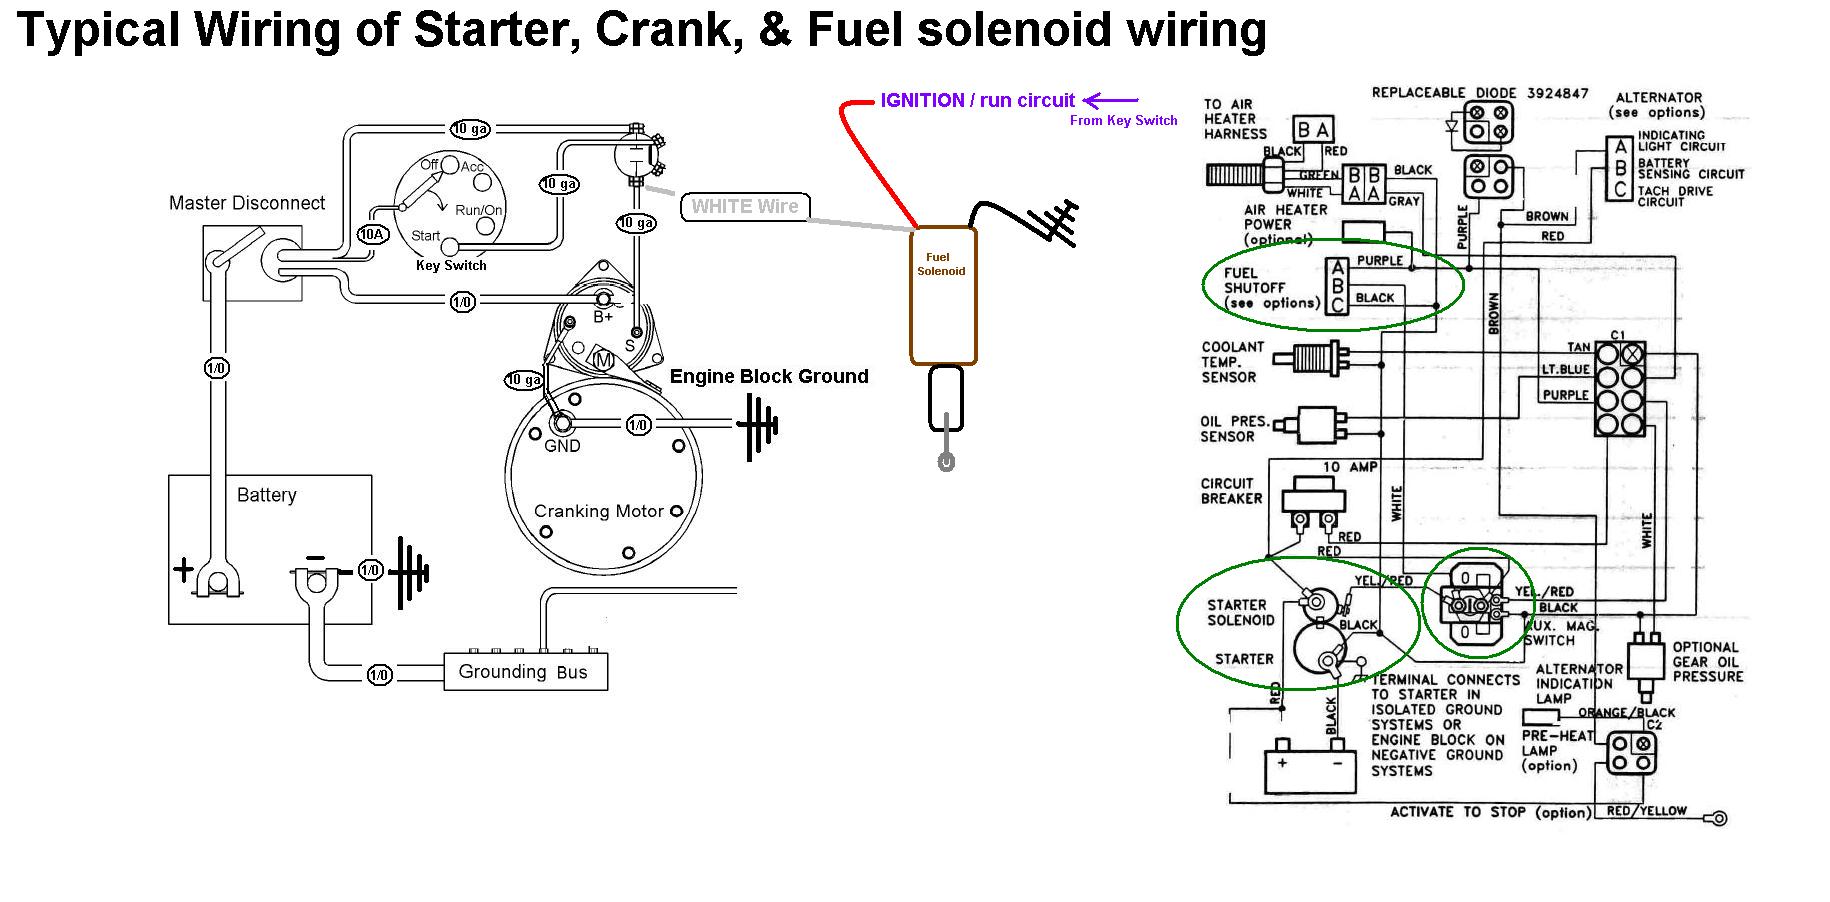 Starter-Crank-Fuel-Solenoid-Wiring.jpg